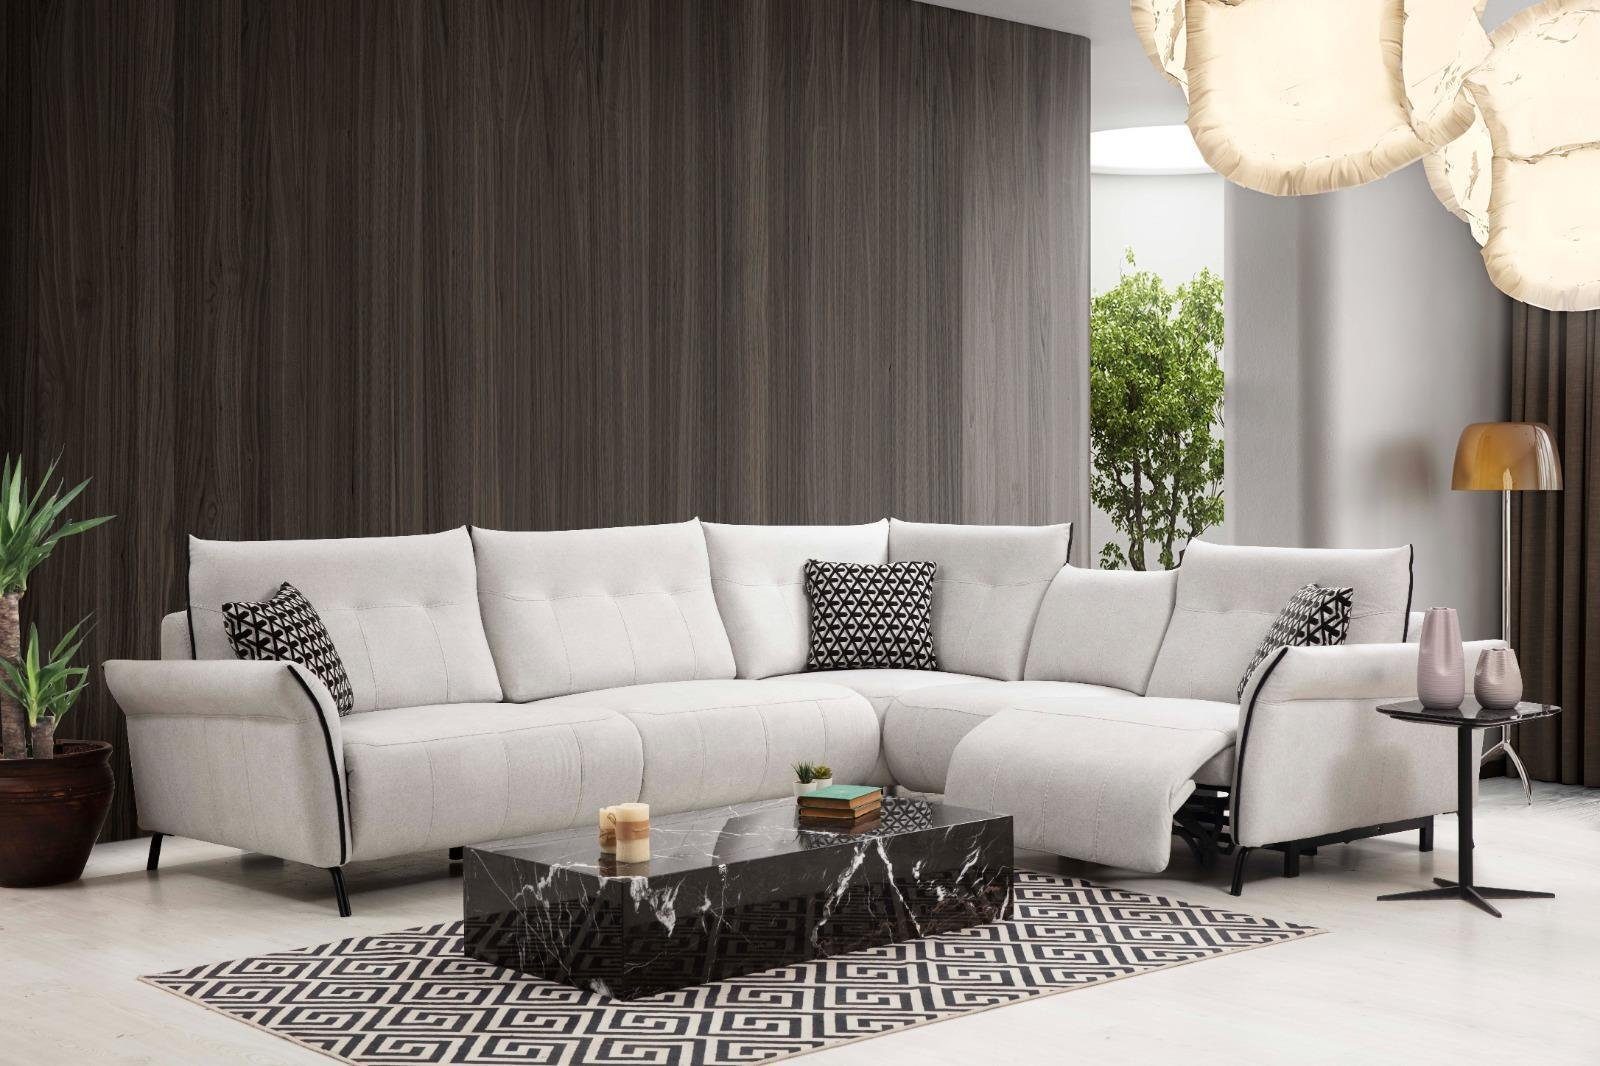 JVmoebel Ecksofa in Textil Designer Wohnzimmer Sofa Neu, Made Ecksofa Polster Möbel Europa Modern Couch Teile, 5